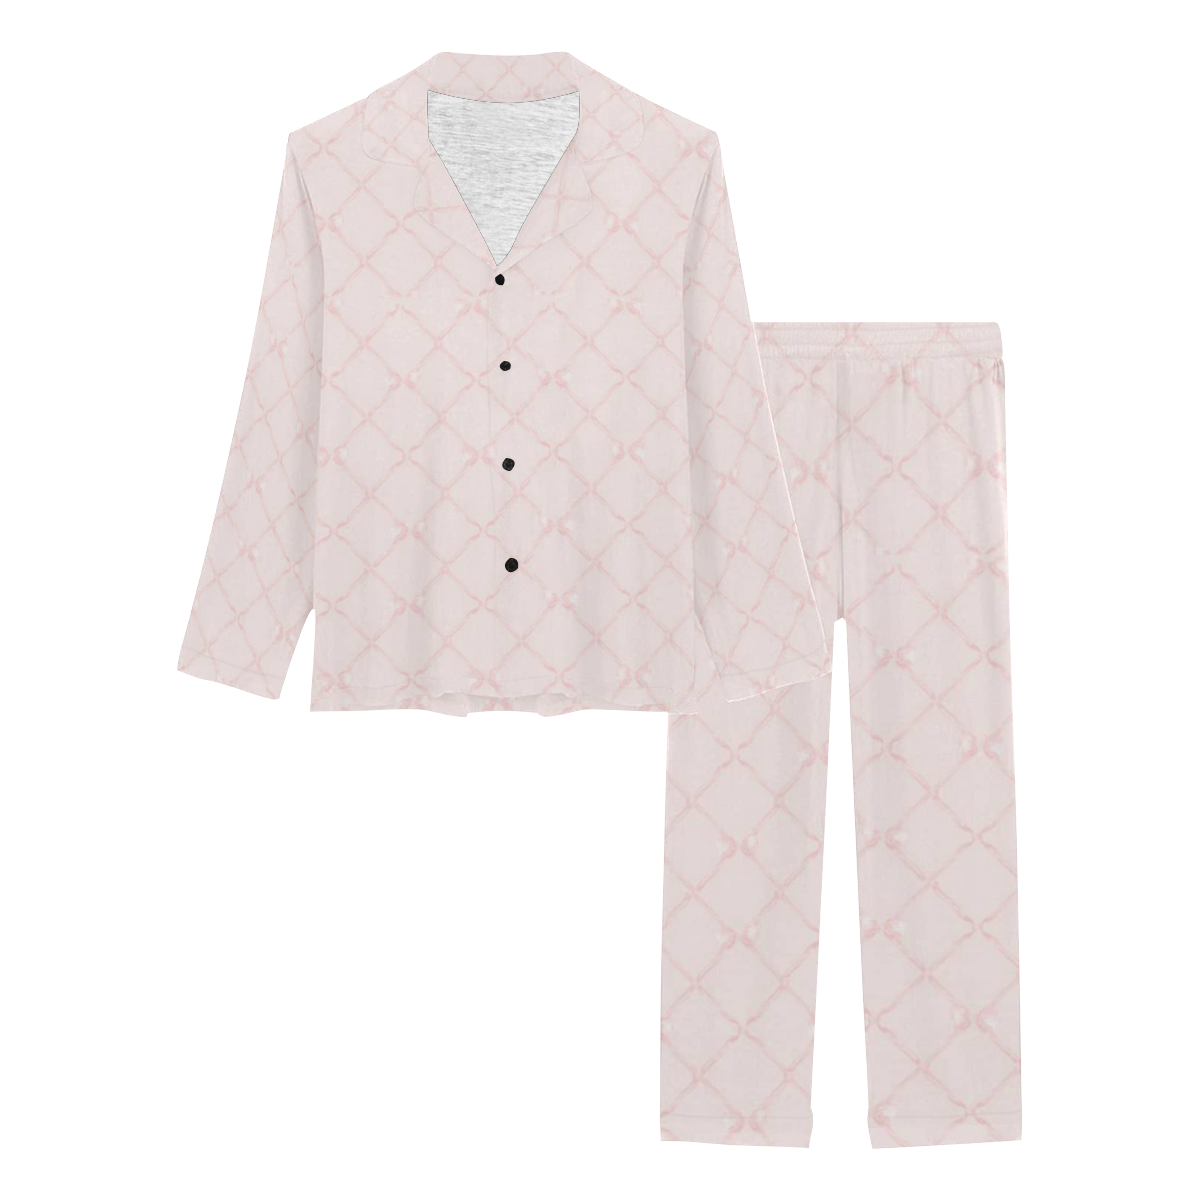 pinkbowtrellislongpjs Women's Long Pajama Set